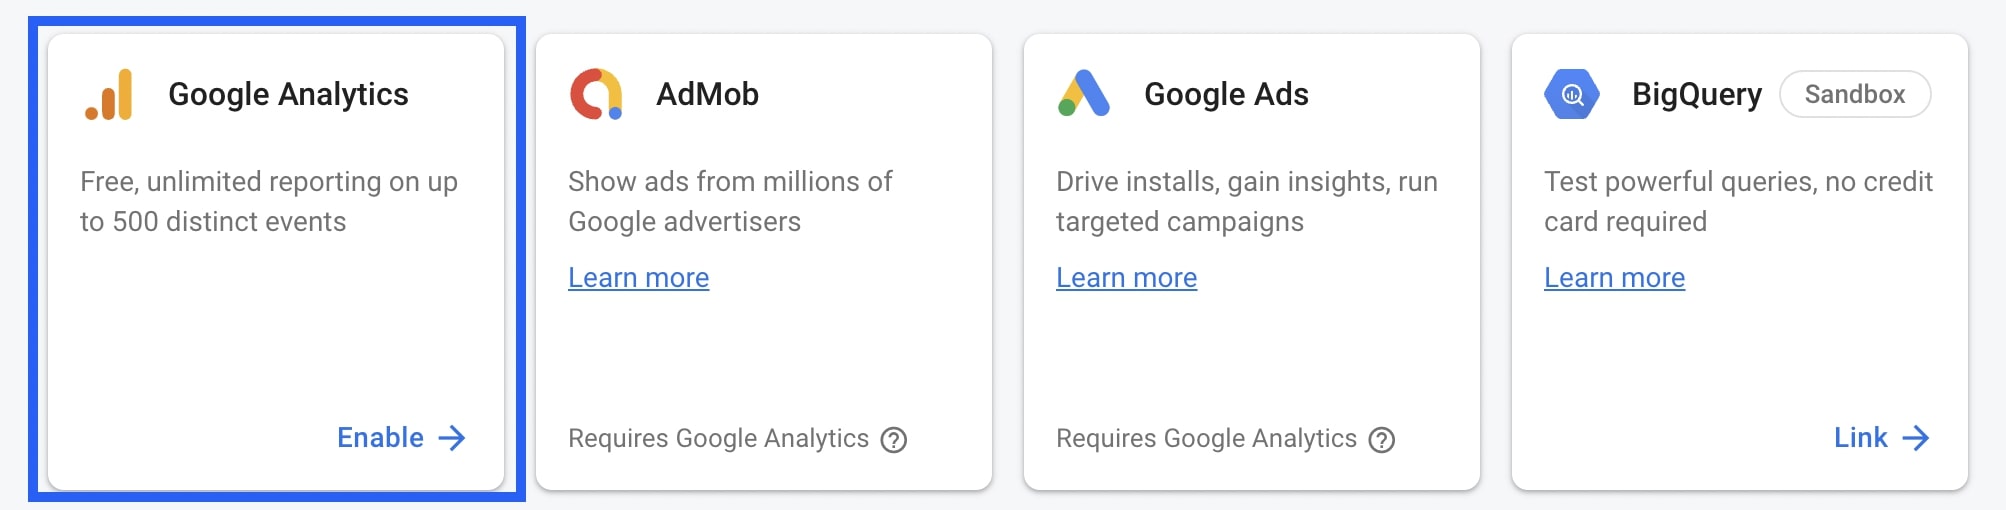 Find Google Analytics